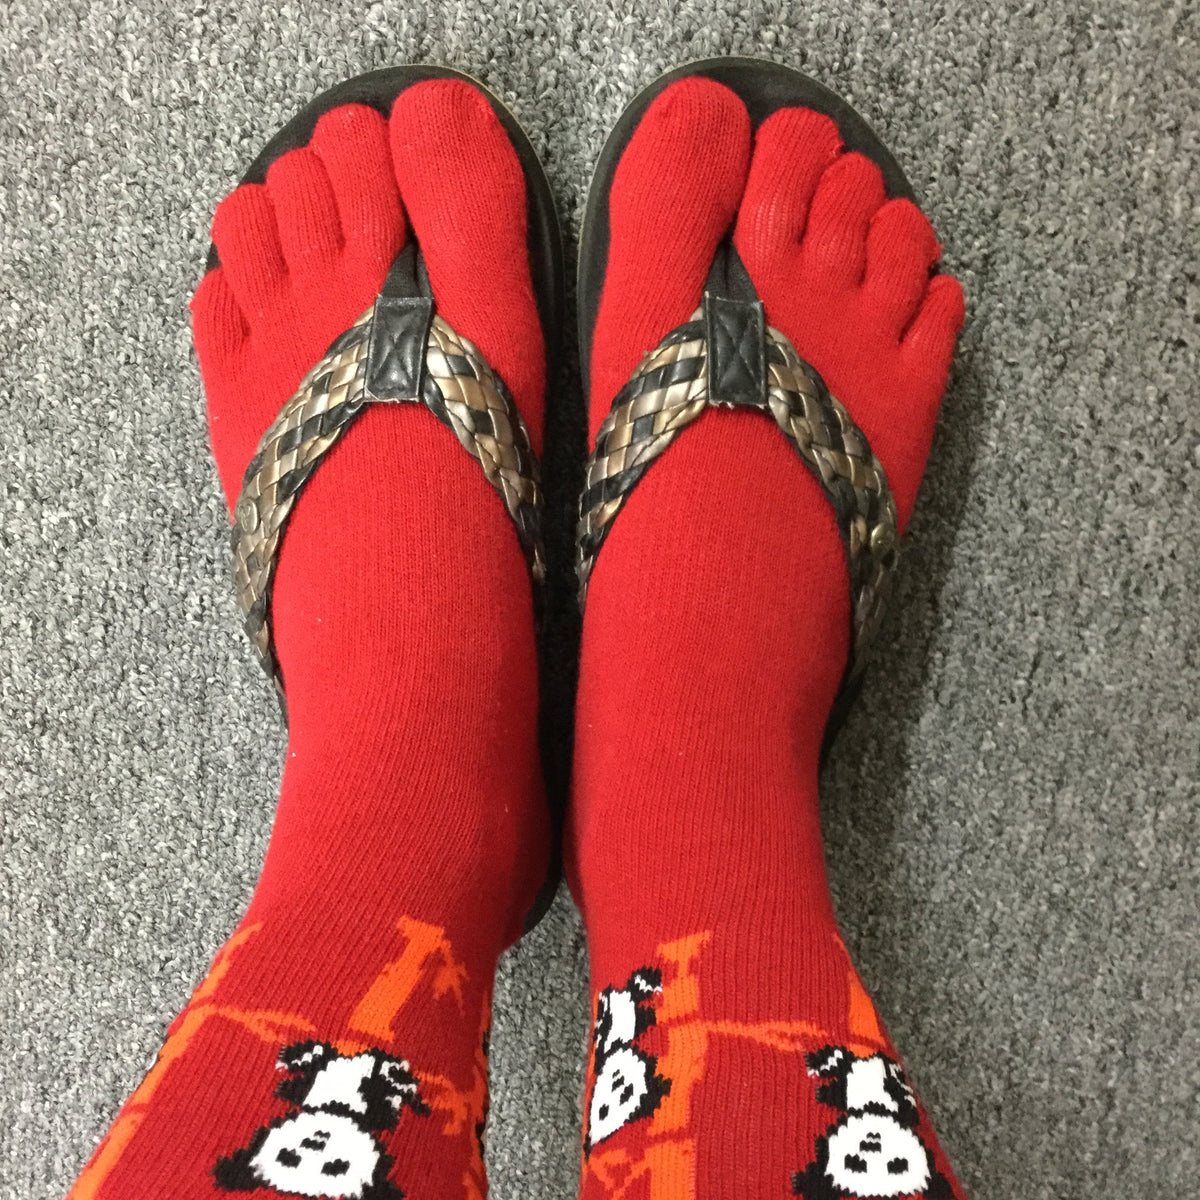 Half Toe Socks-brownjapanese Toe Socksjapanese Jacquard Design Socks 